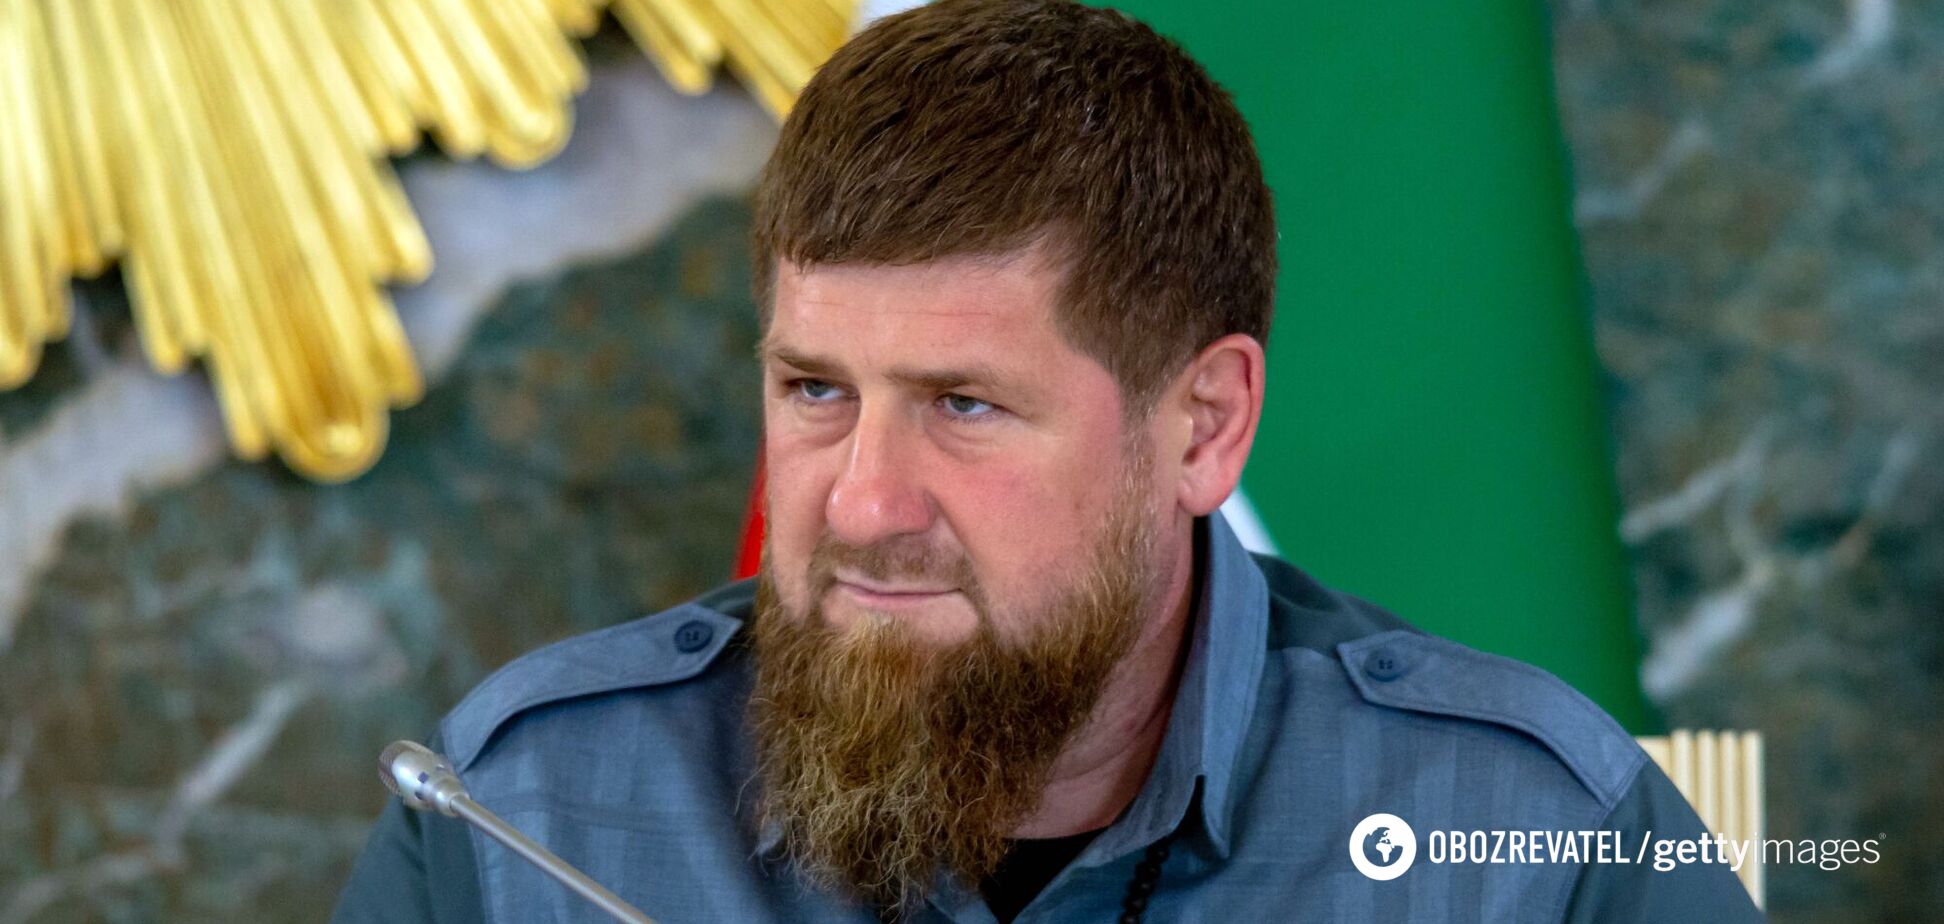 Парень работал модератором Telegram-канала, который критикует Кадырова